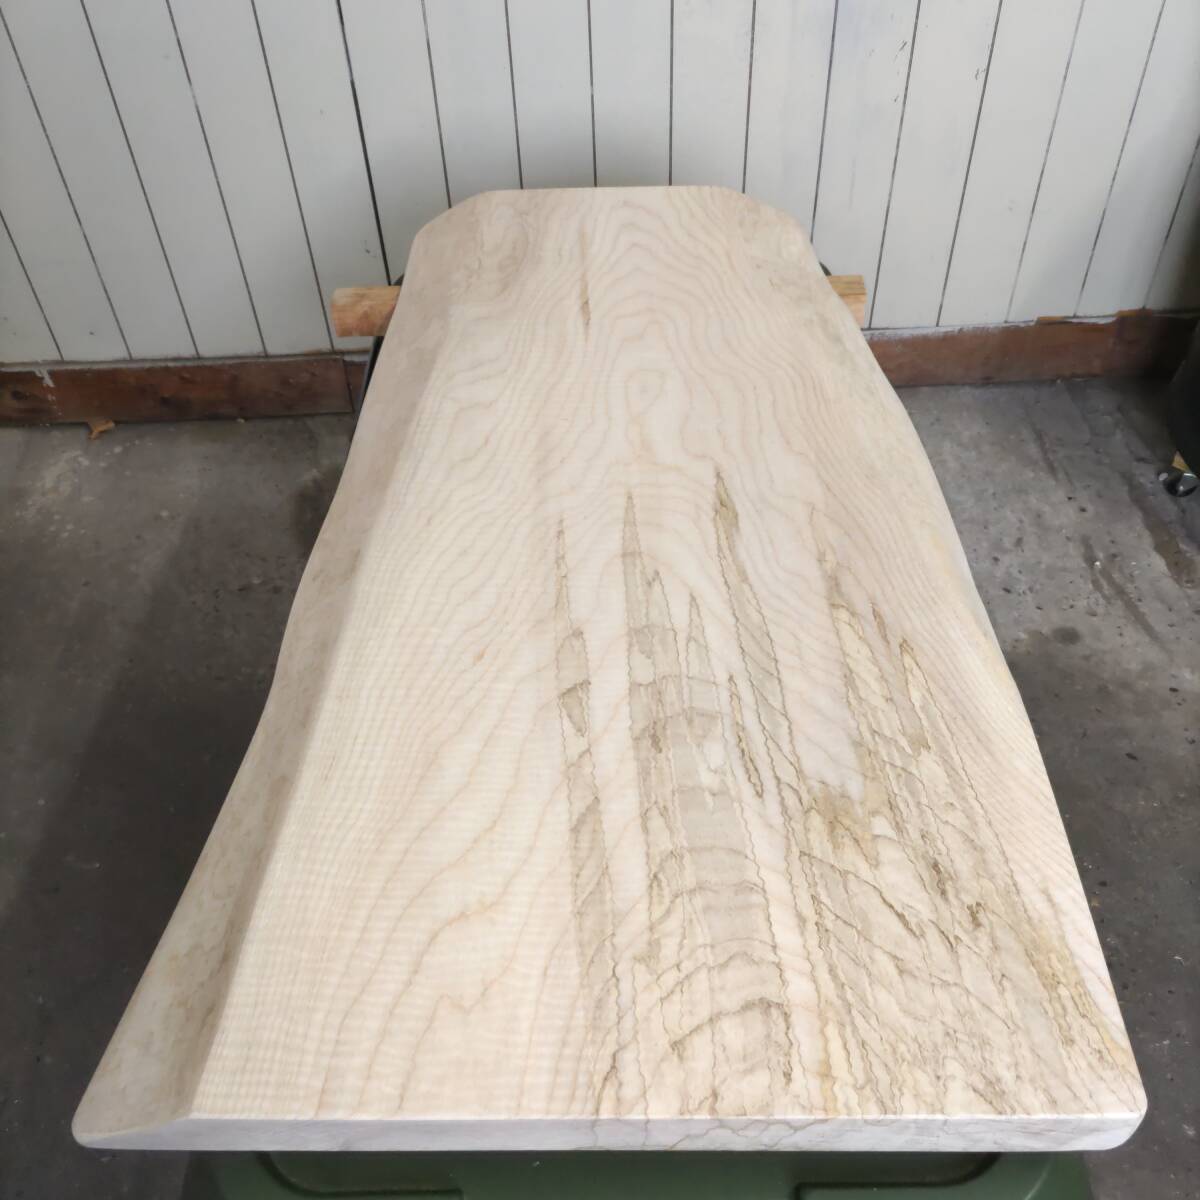 イタヤカエデ 楓 約長900幅380〜500厚45ミリ 製材後約半年 耳付き板 一枚板 天然木 無垢 未乾燥 花台 多肉棚 テーブル板の画像1